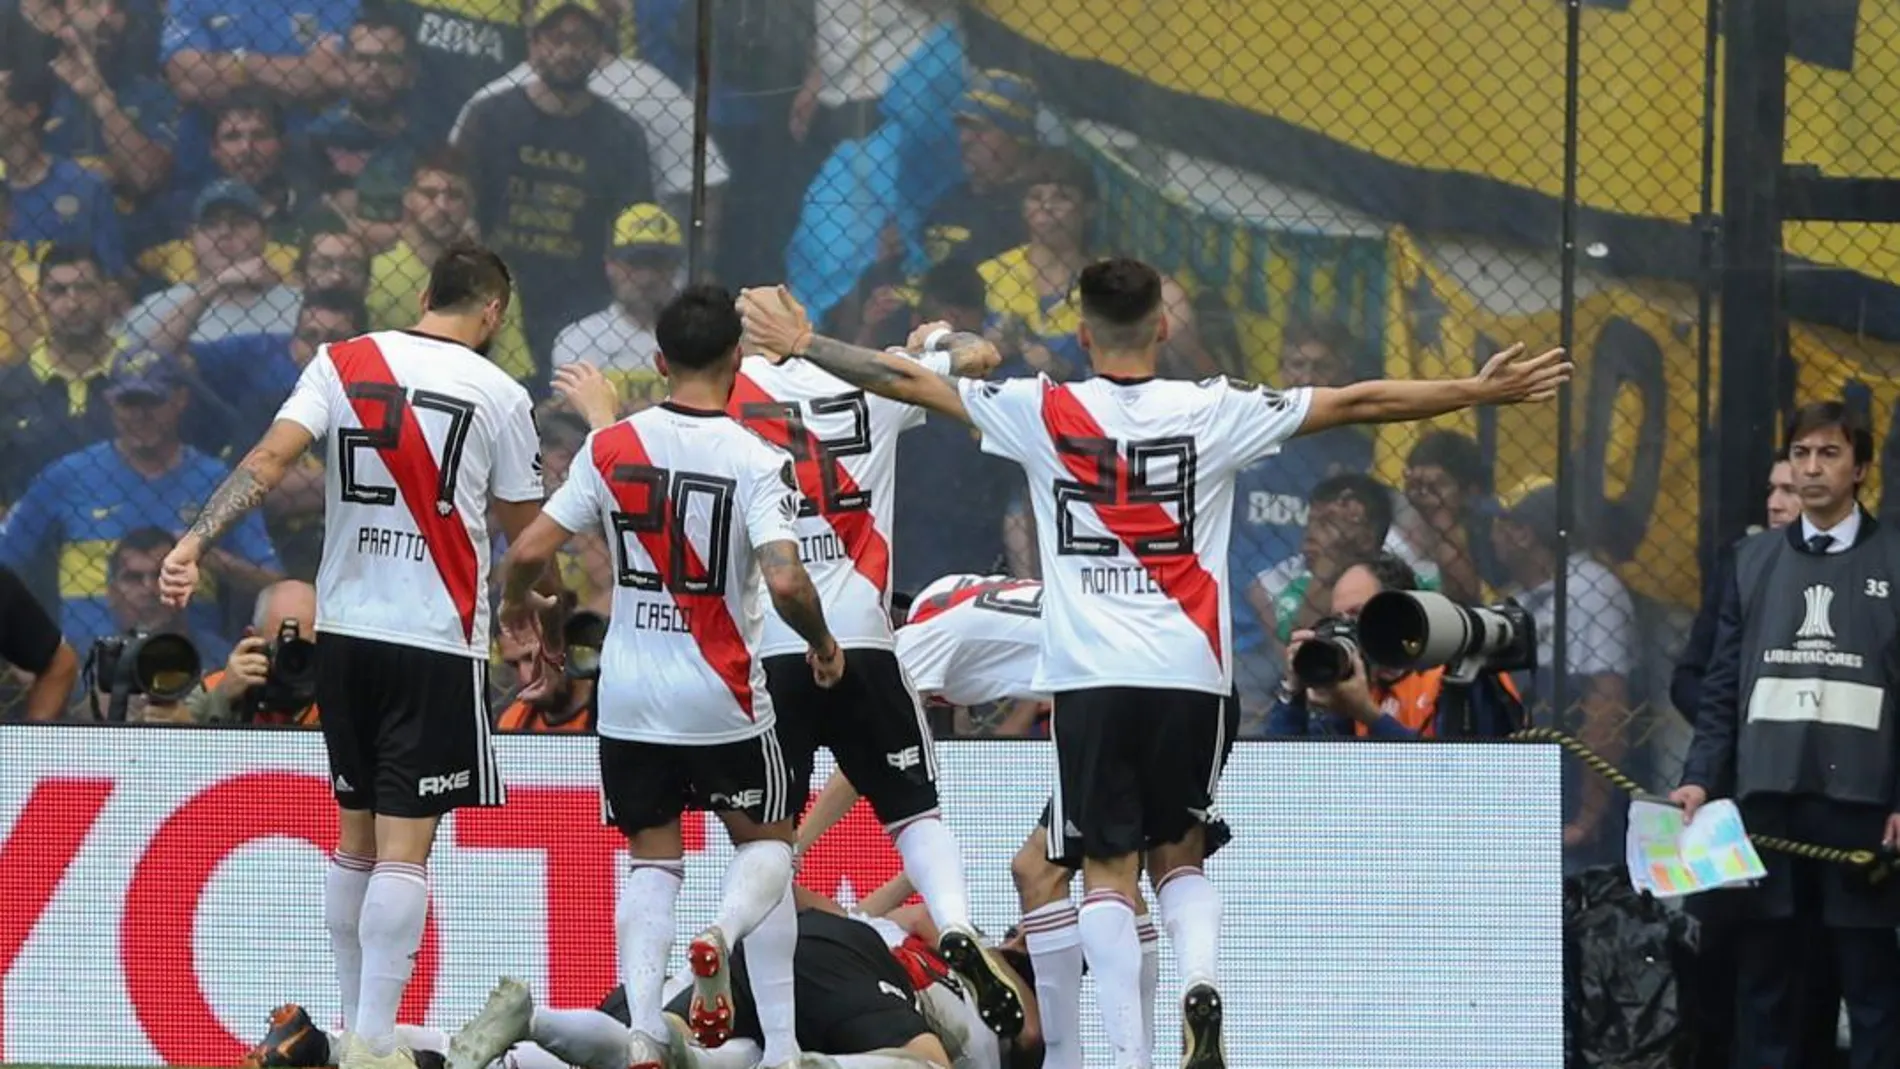 Jugadores de River celebran el empate luego de un autogol de Carlos Izquierdoz, de Boca Juniors. EFE/Juan Ignacio Roncoroni